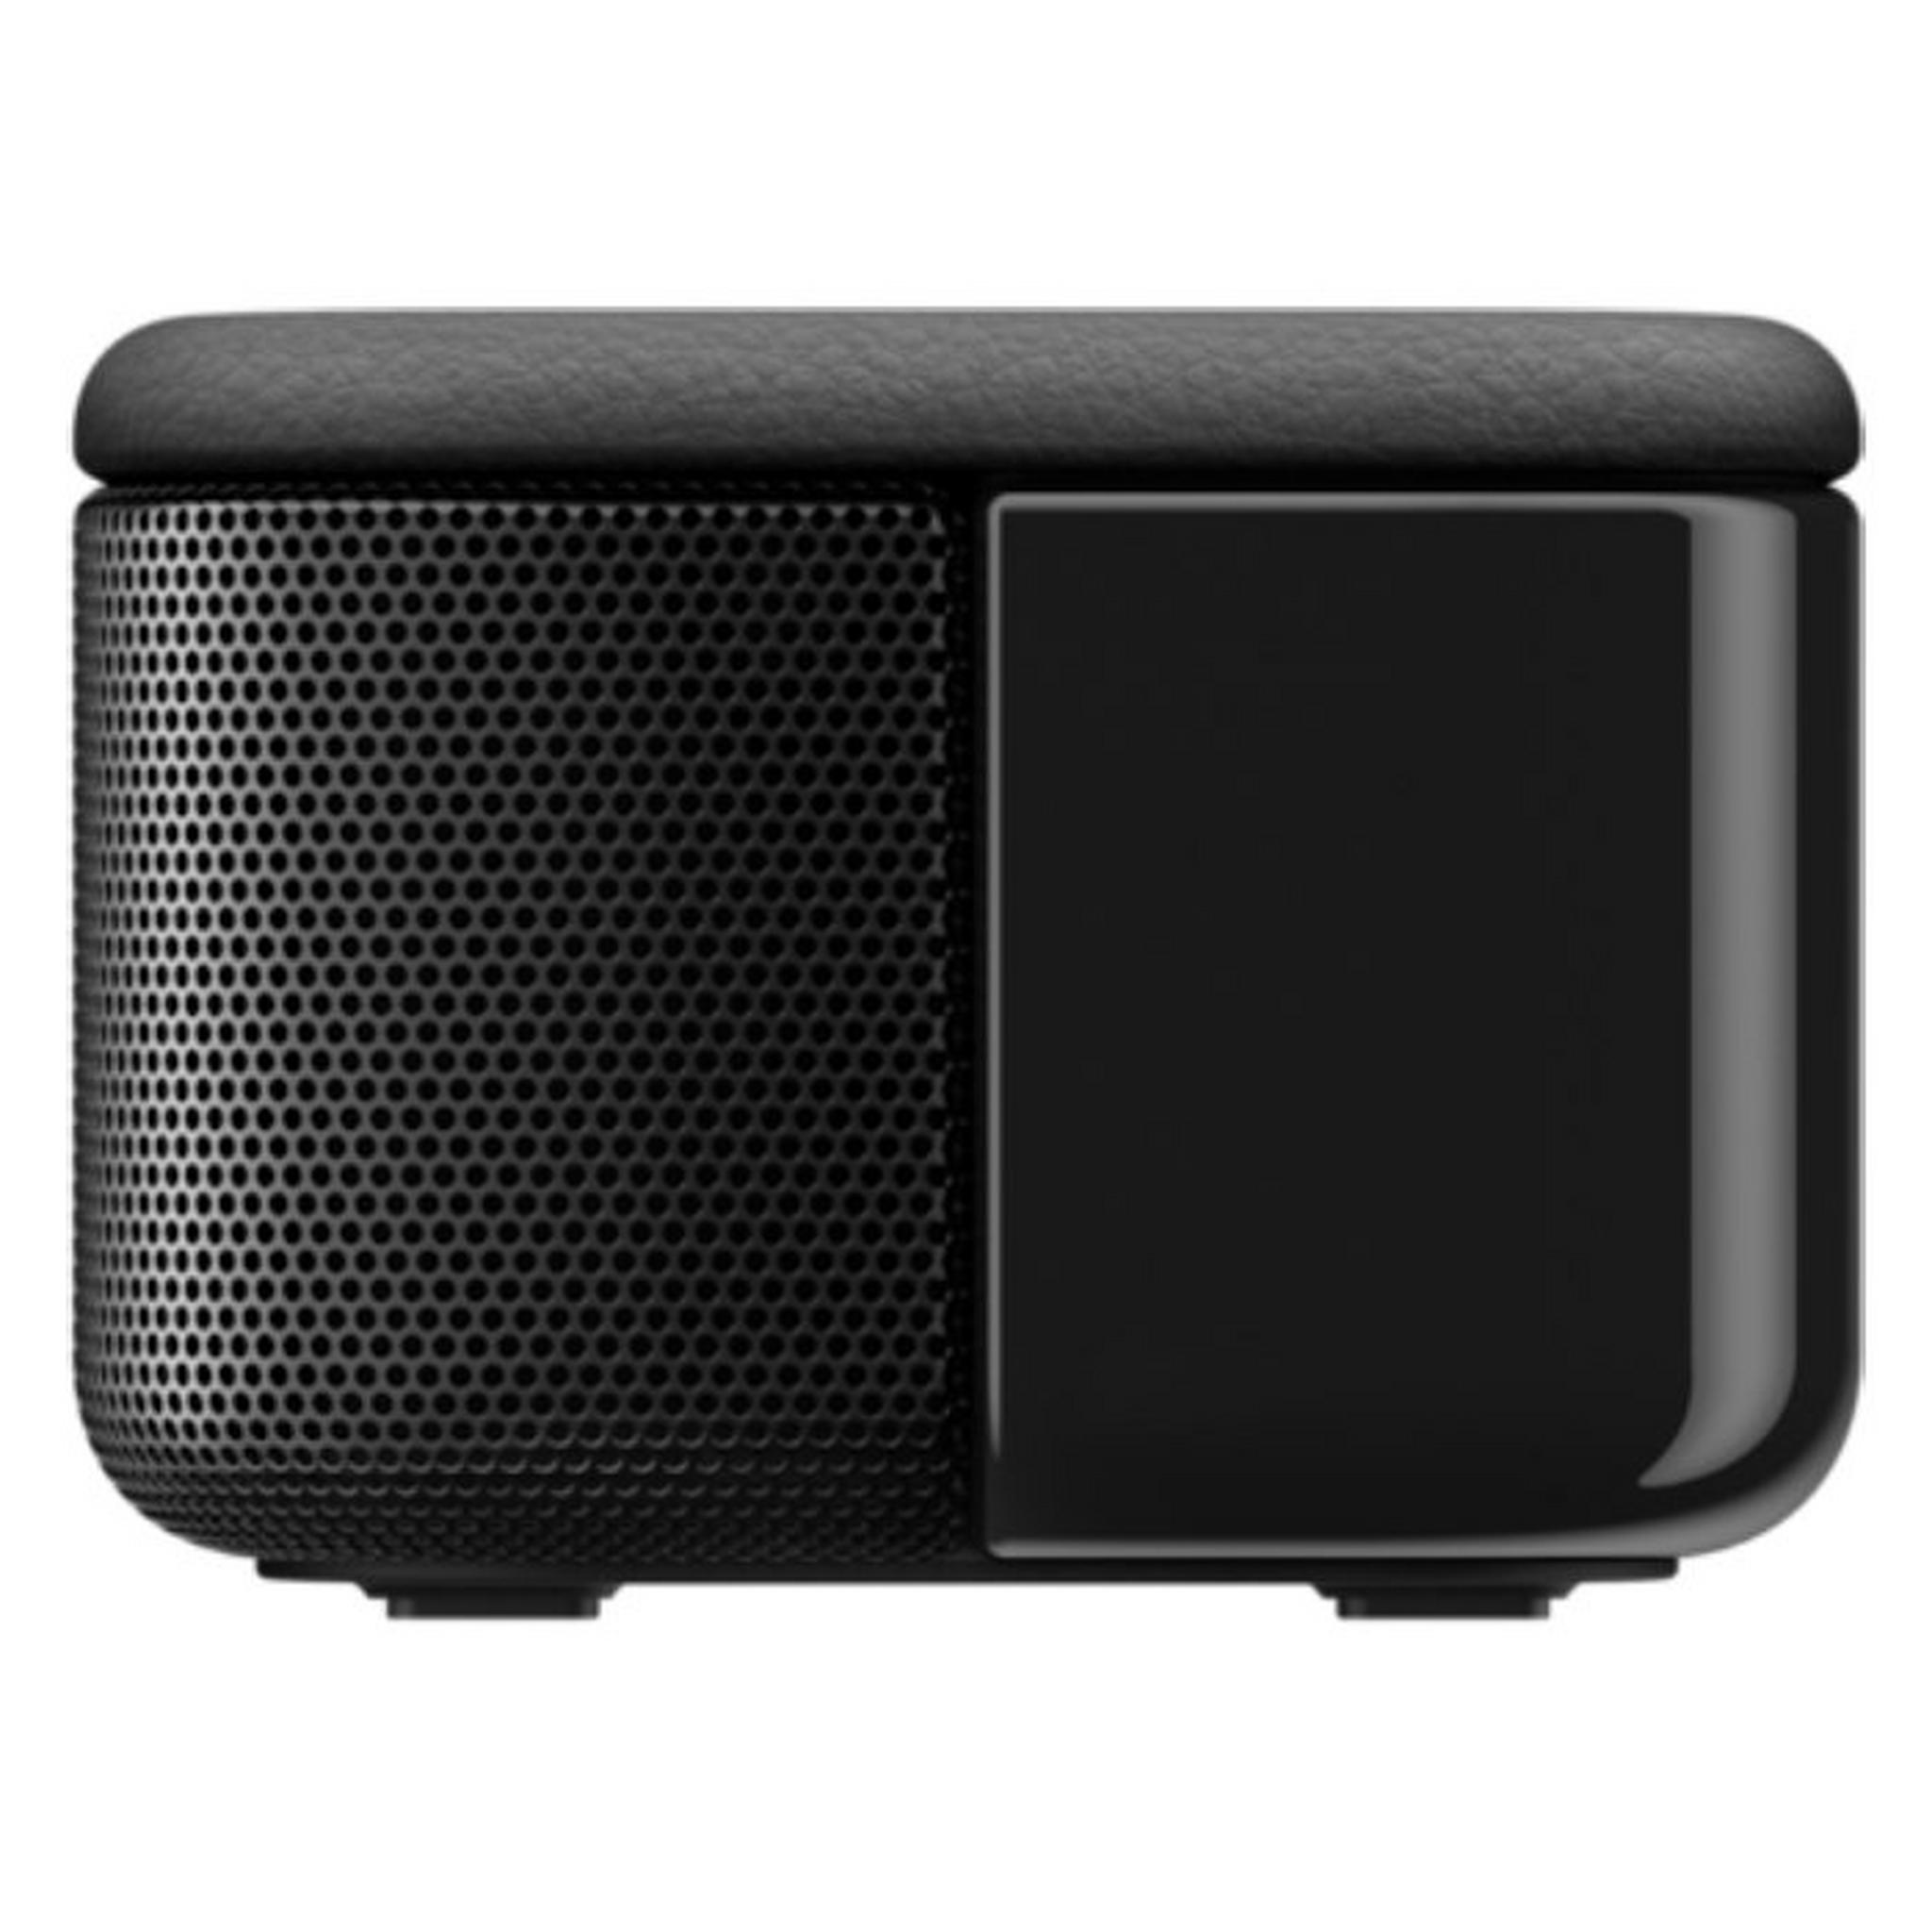 Sony 120W Soundbar (HT-S100F) - Black